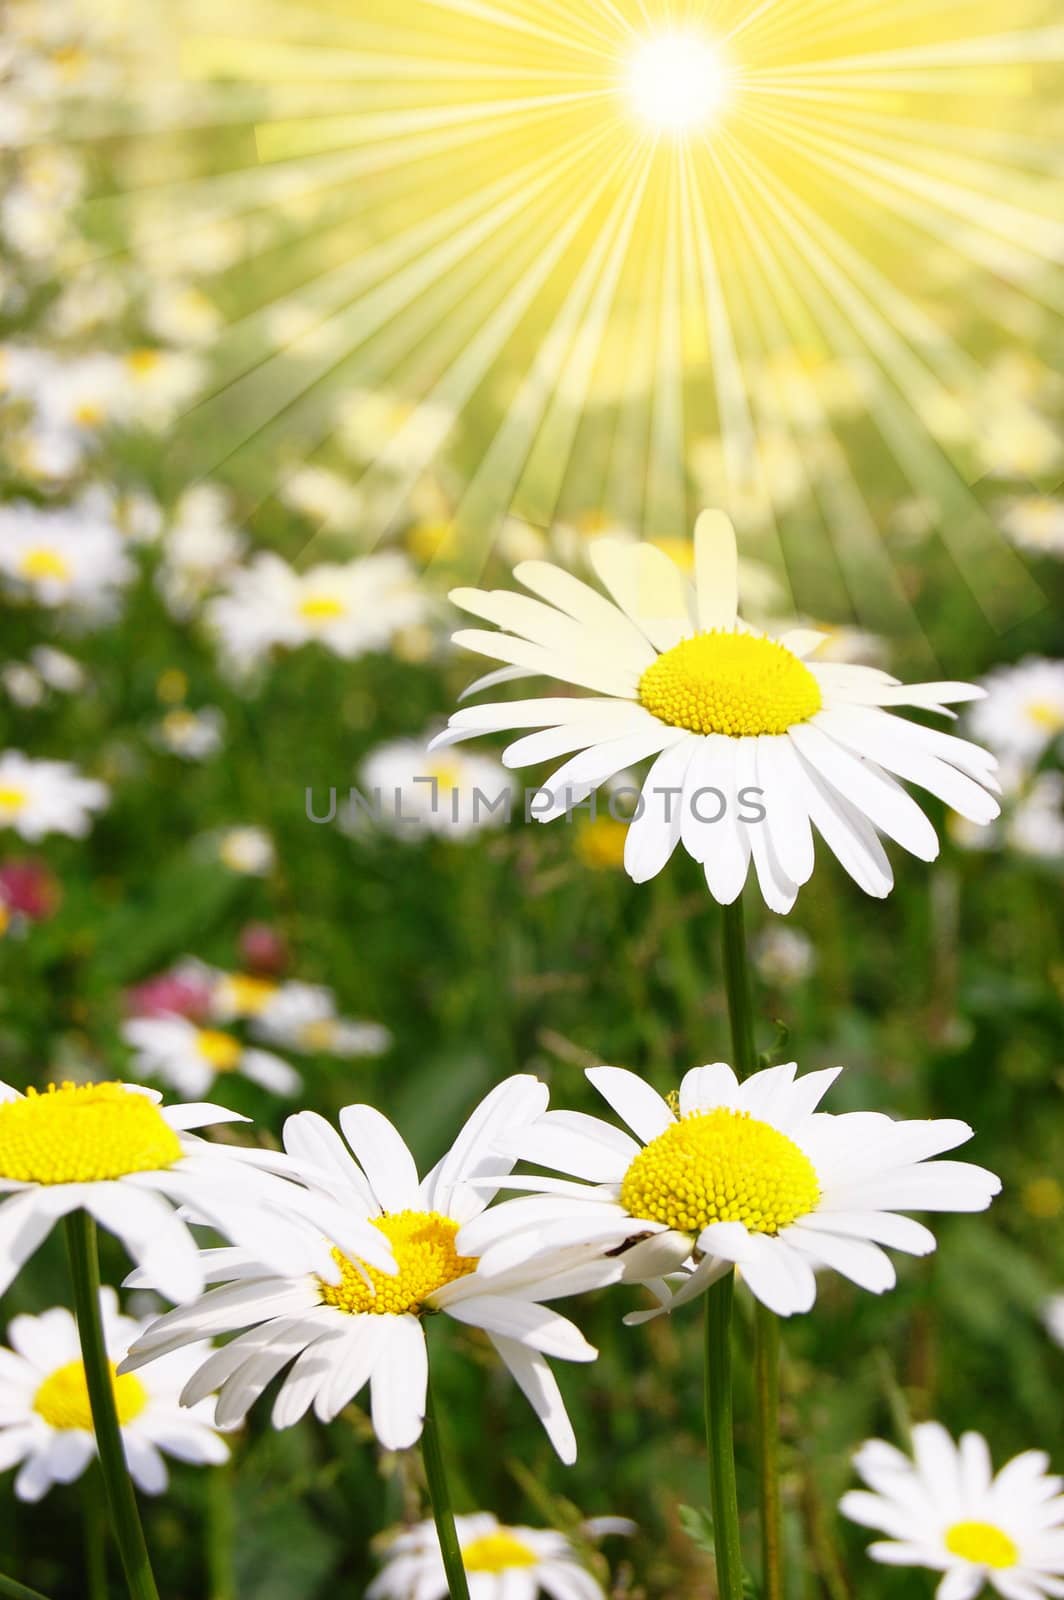 daisy flower on a summer field by gunnar3000